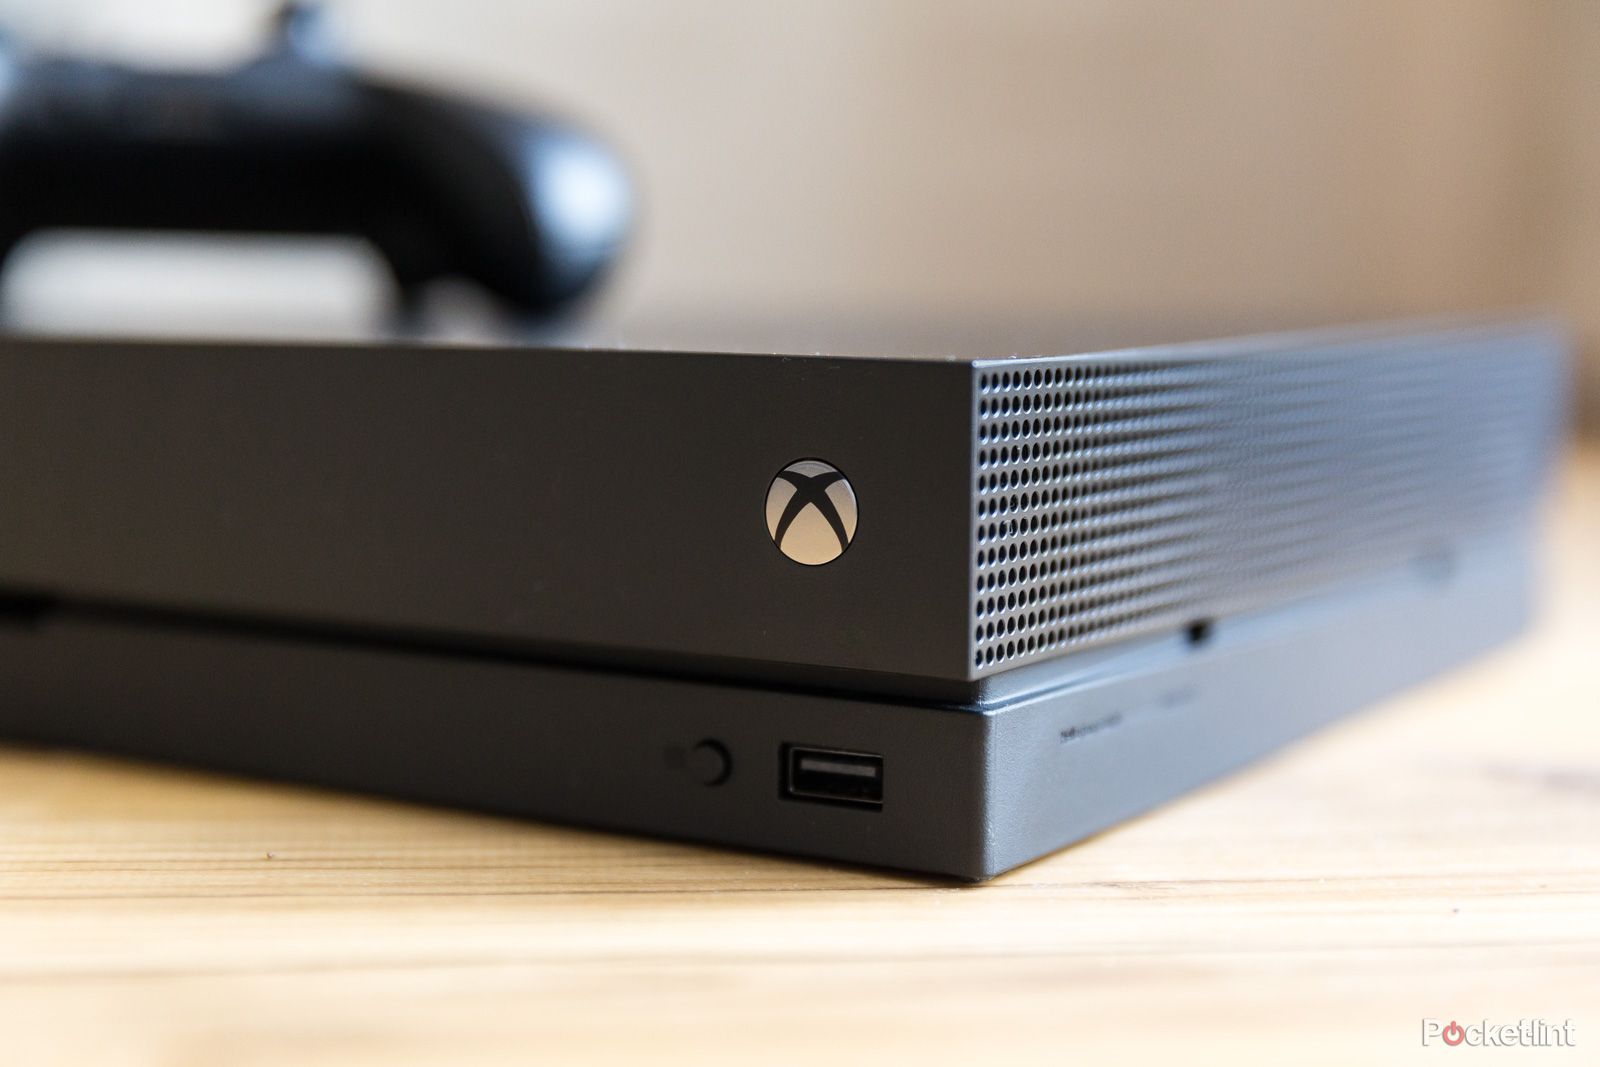 Probamos la Xbox One X, y es asombrosa